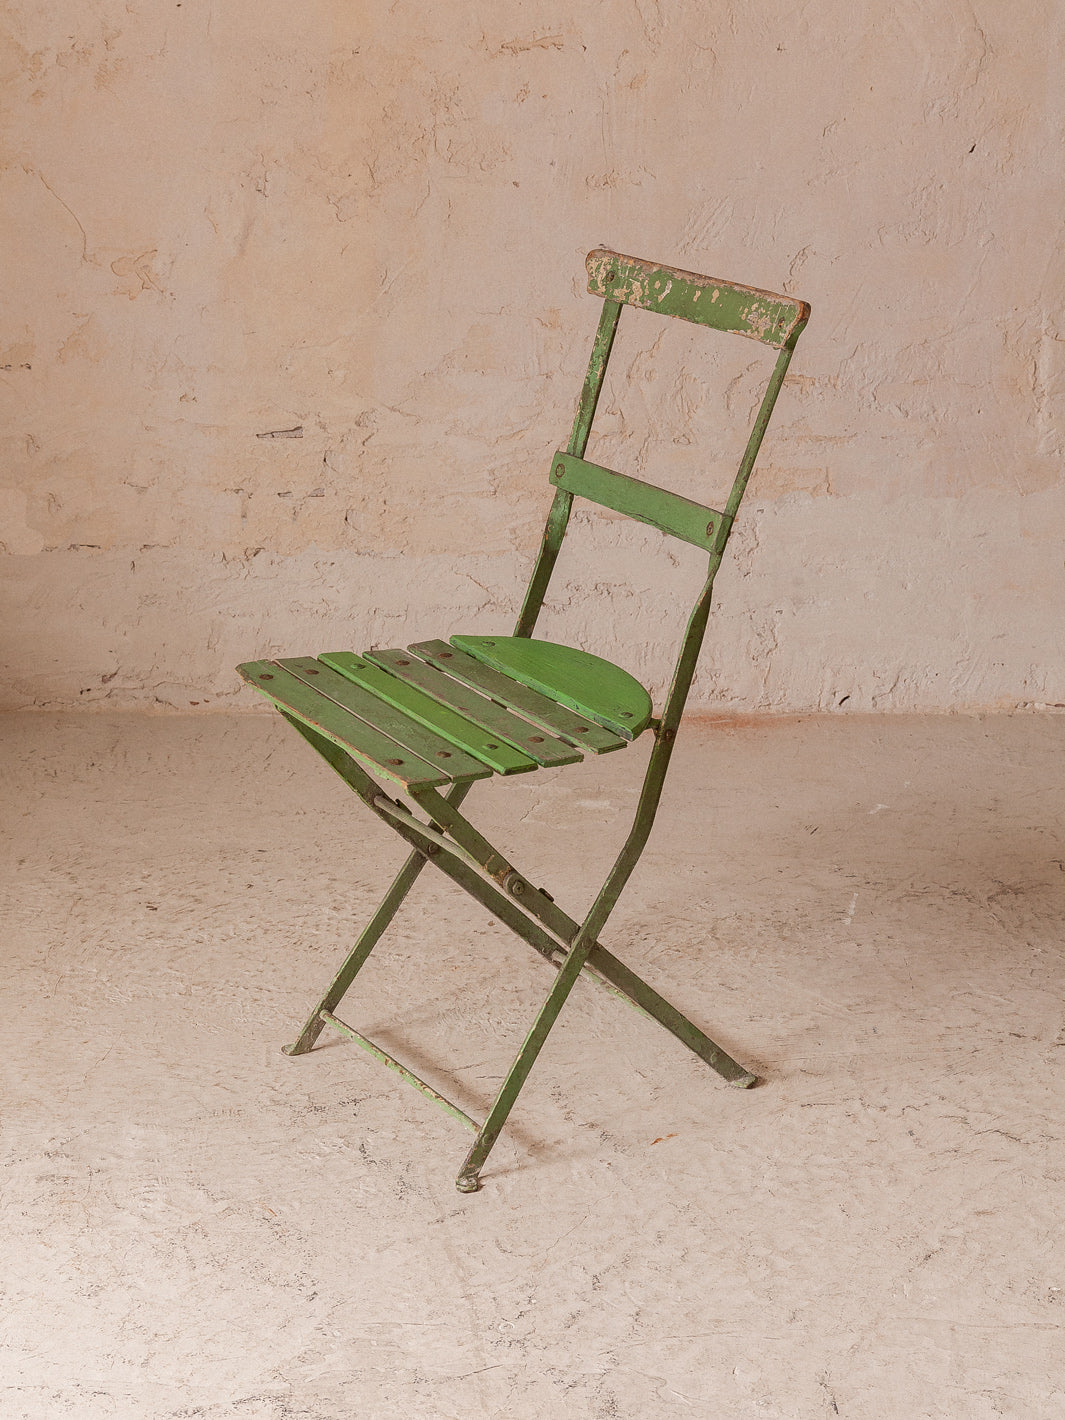 Suite de 4 chaises pliantes vertes des années 60